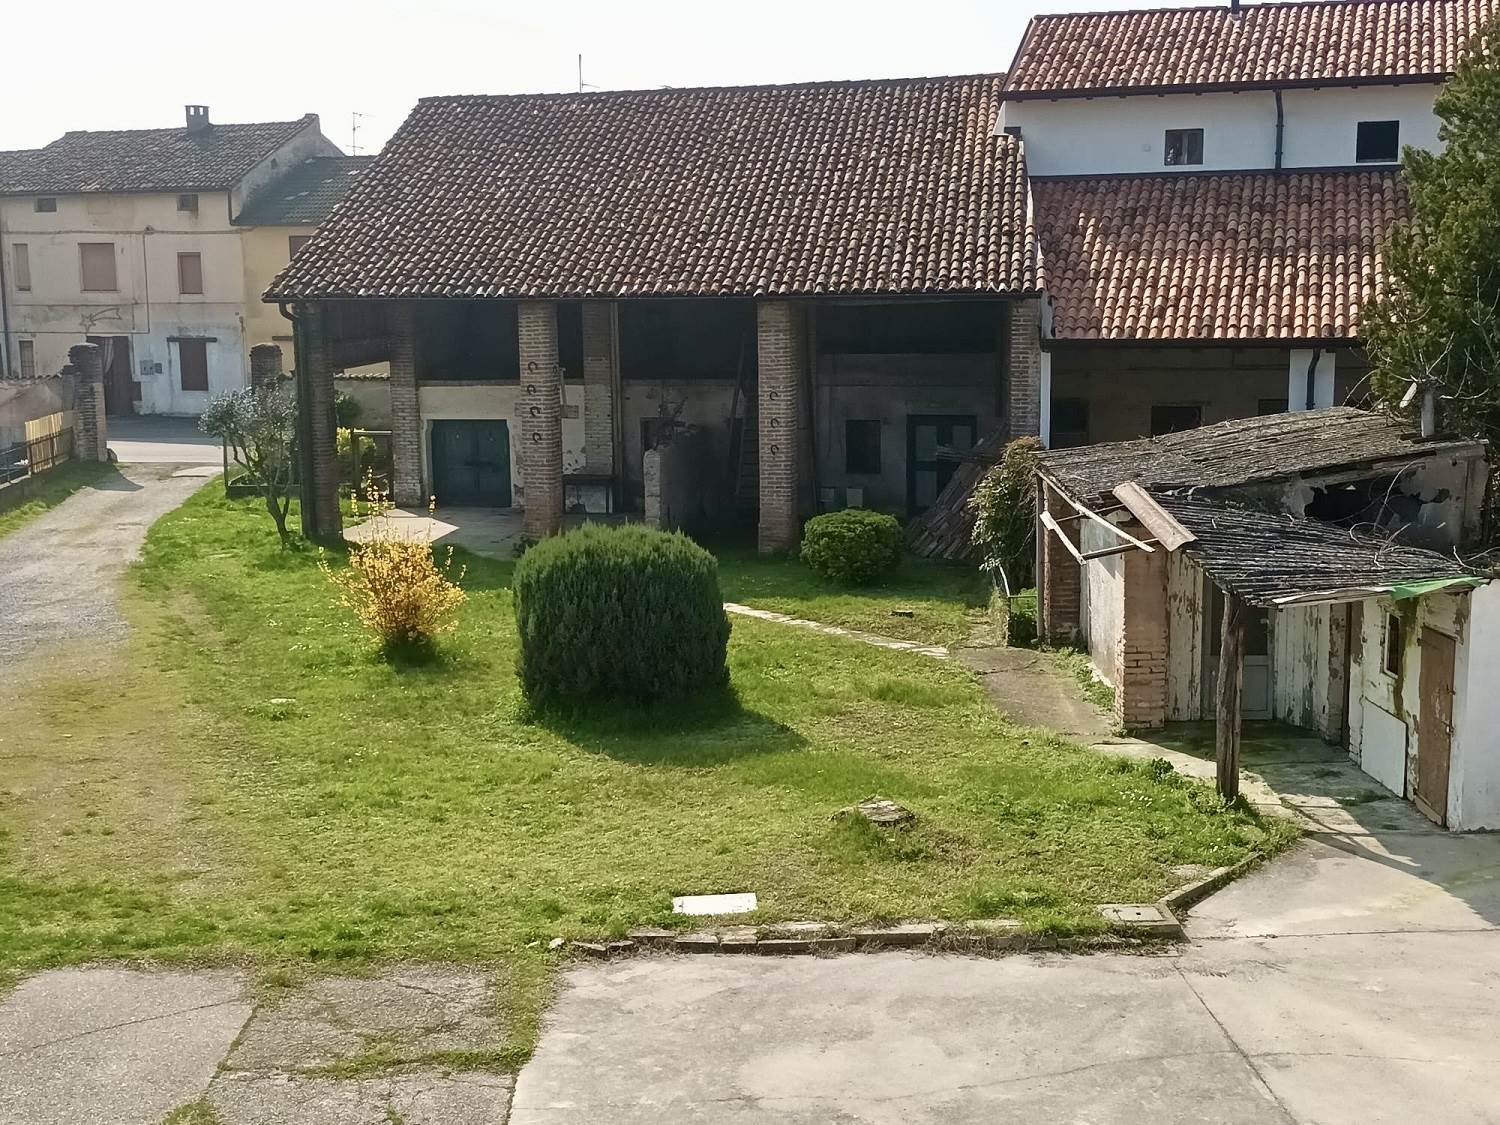 Rustico / Casale in vendita a Cremosano, 3 locali, prezzo € 49.000 | PortaleAgenzieImmobiliari.it